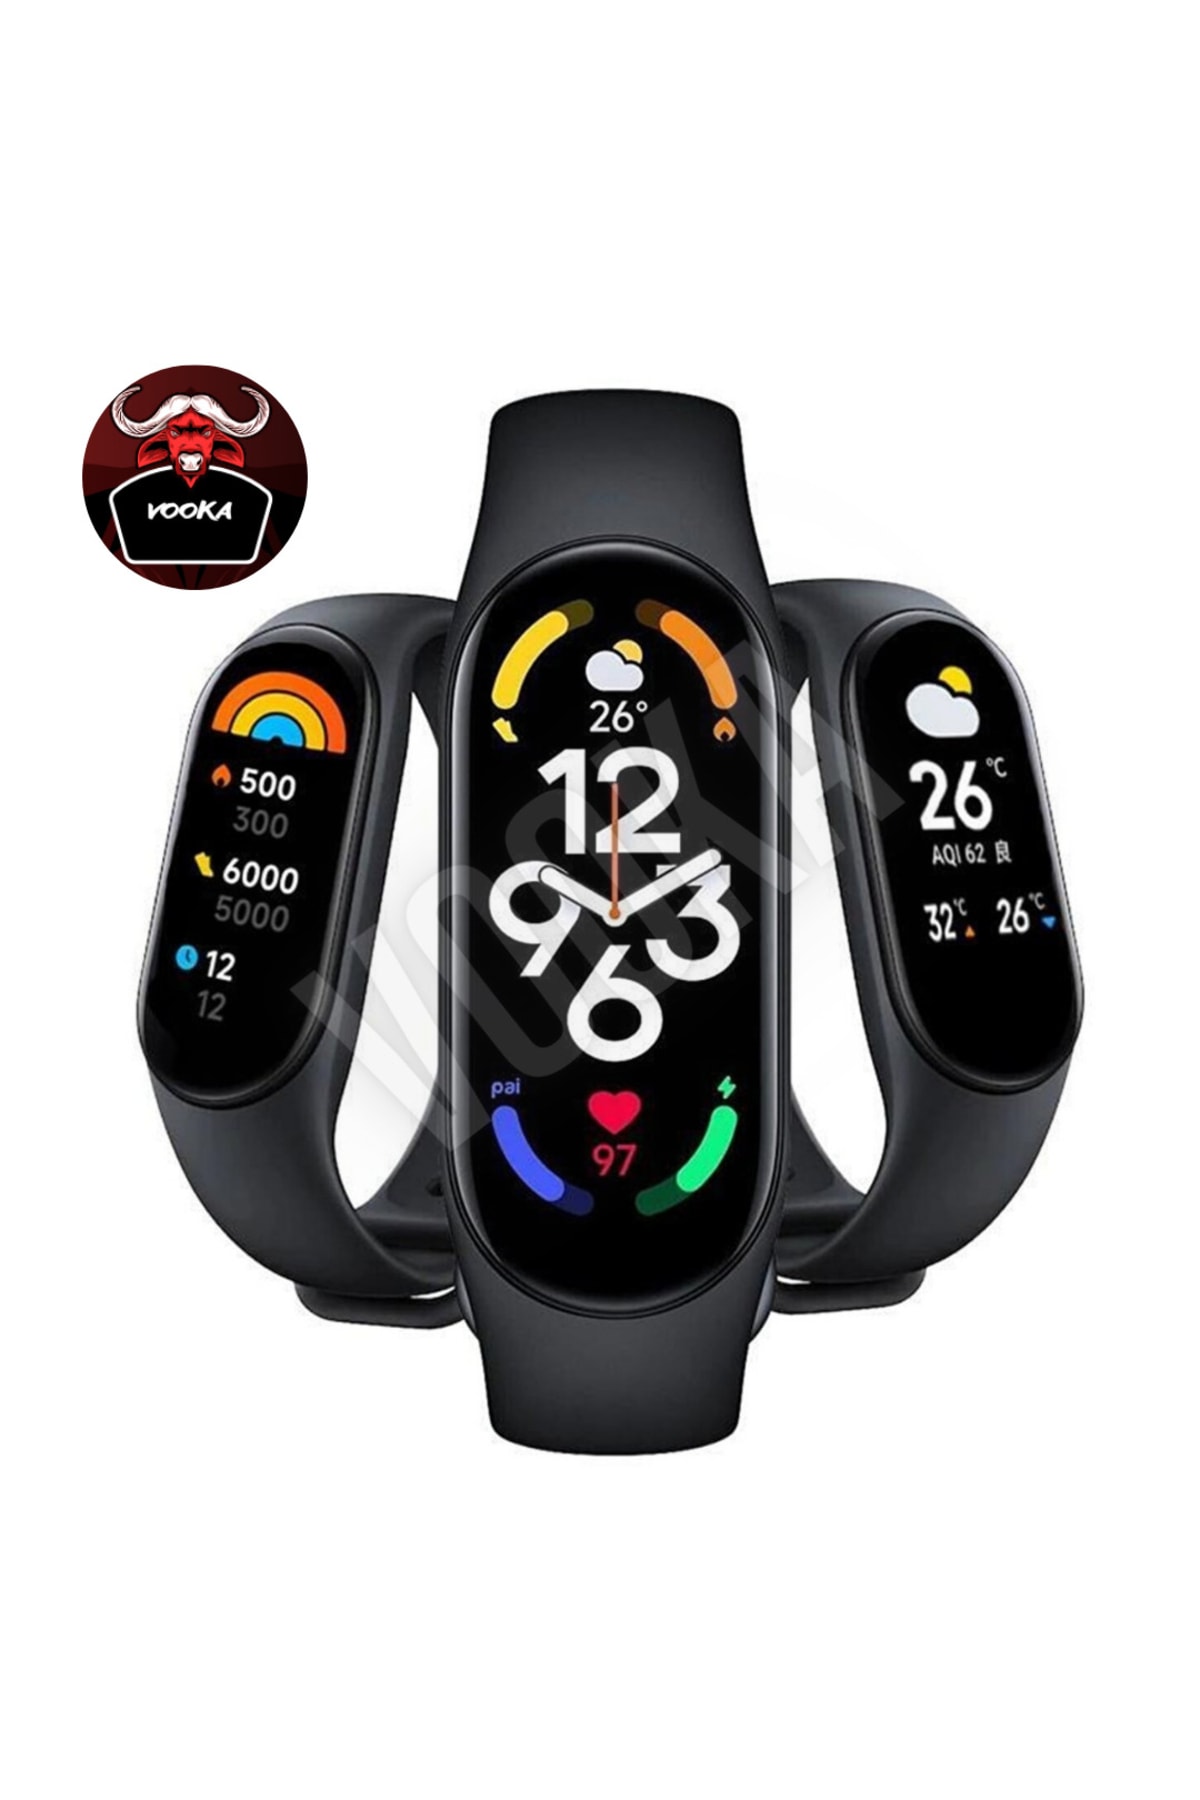 VOOKA Togo M7 Akıllı Bileklik Yeni Nesil Spor Modlu Full Fonksiyon Akıllı Saat M6 Seri Siyah